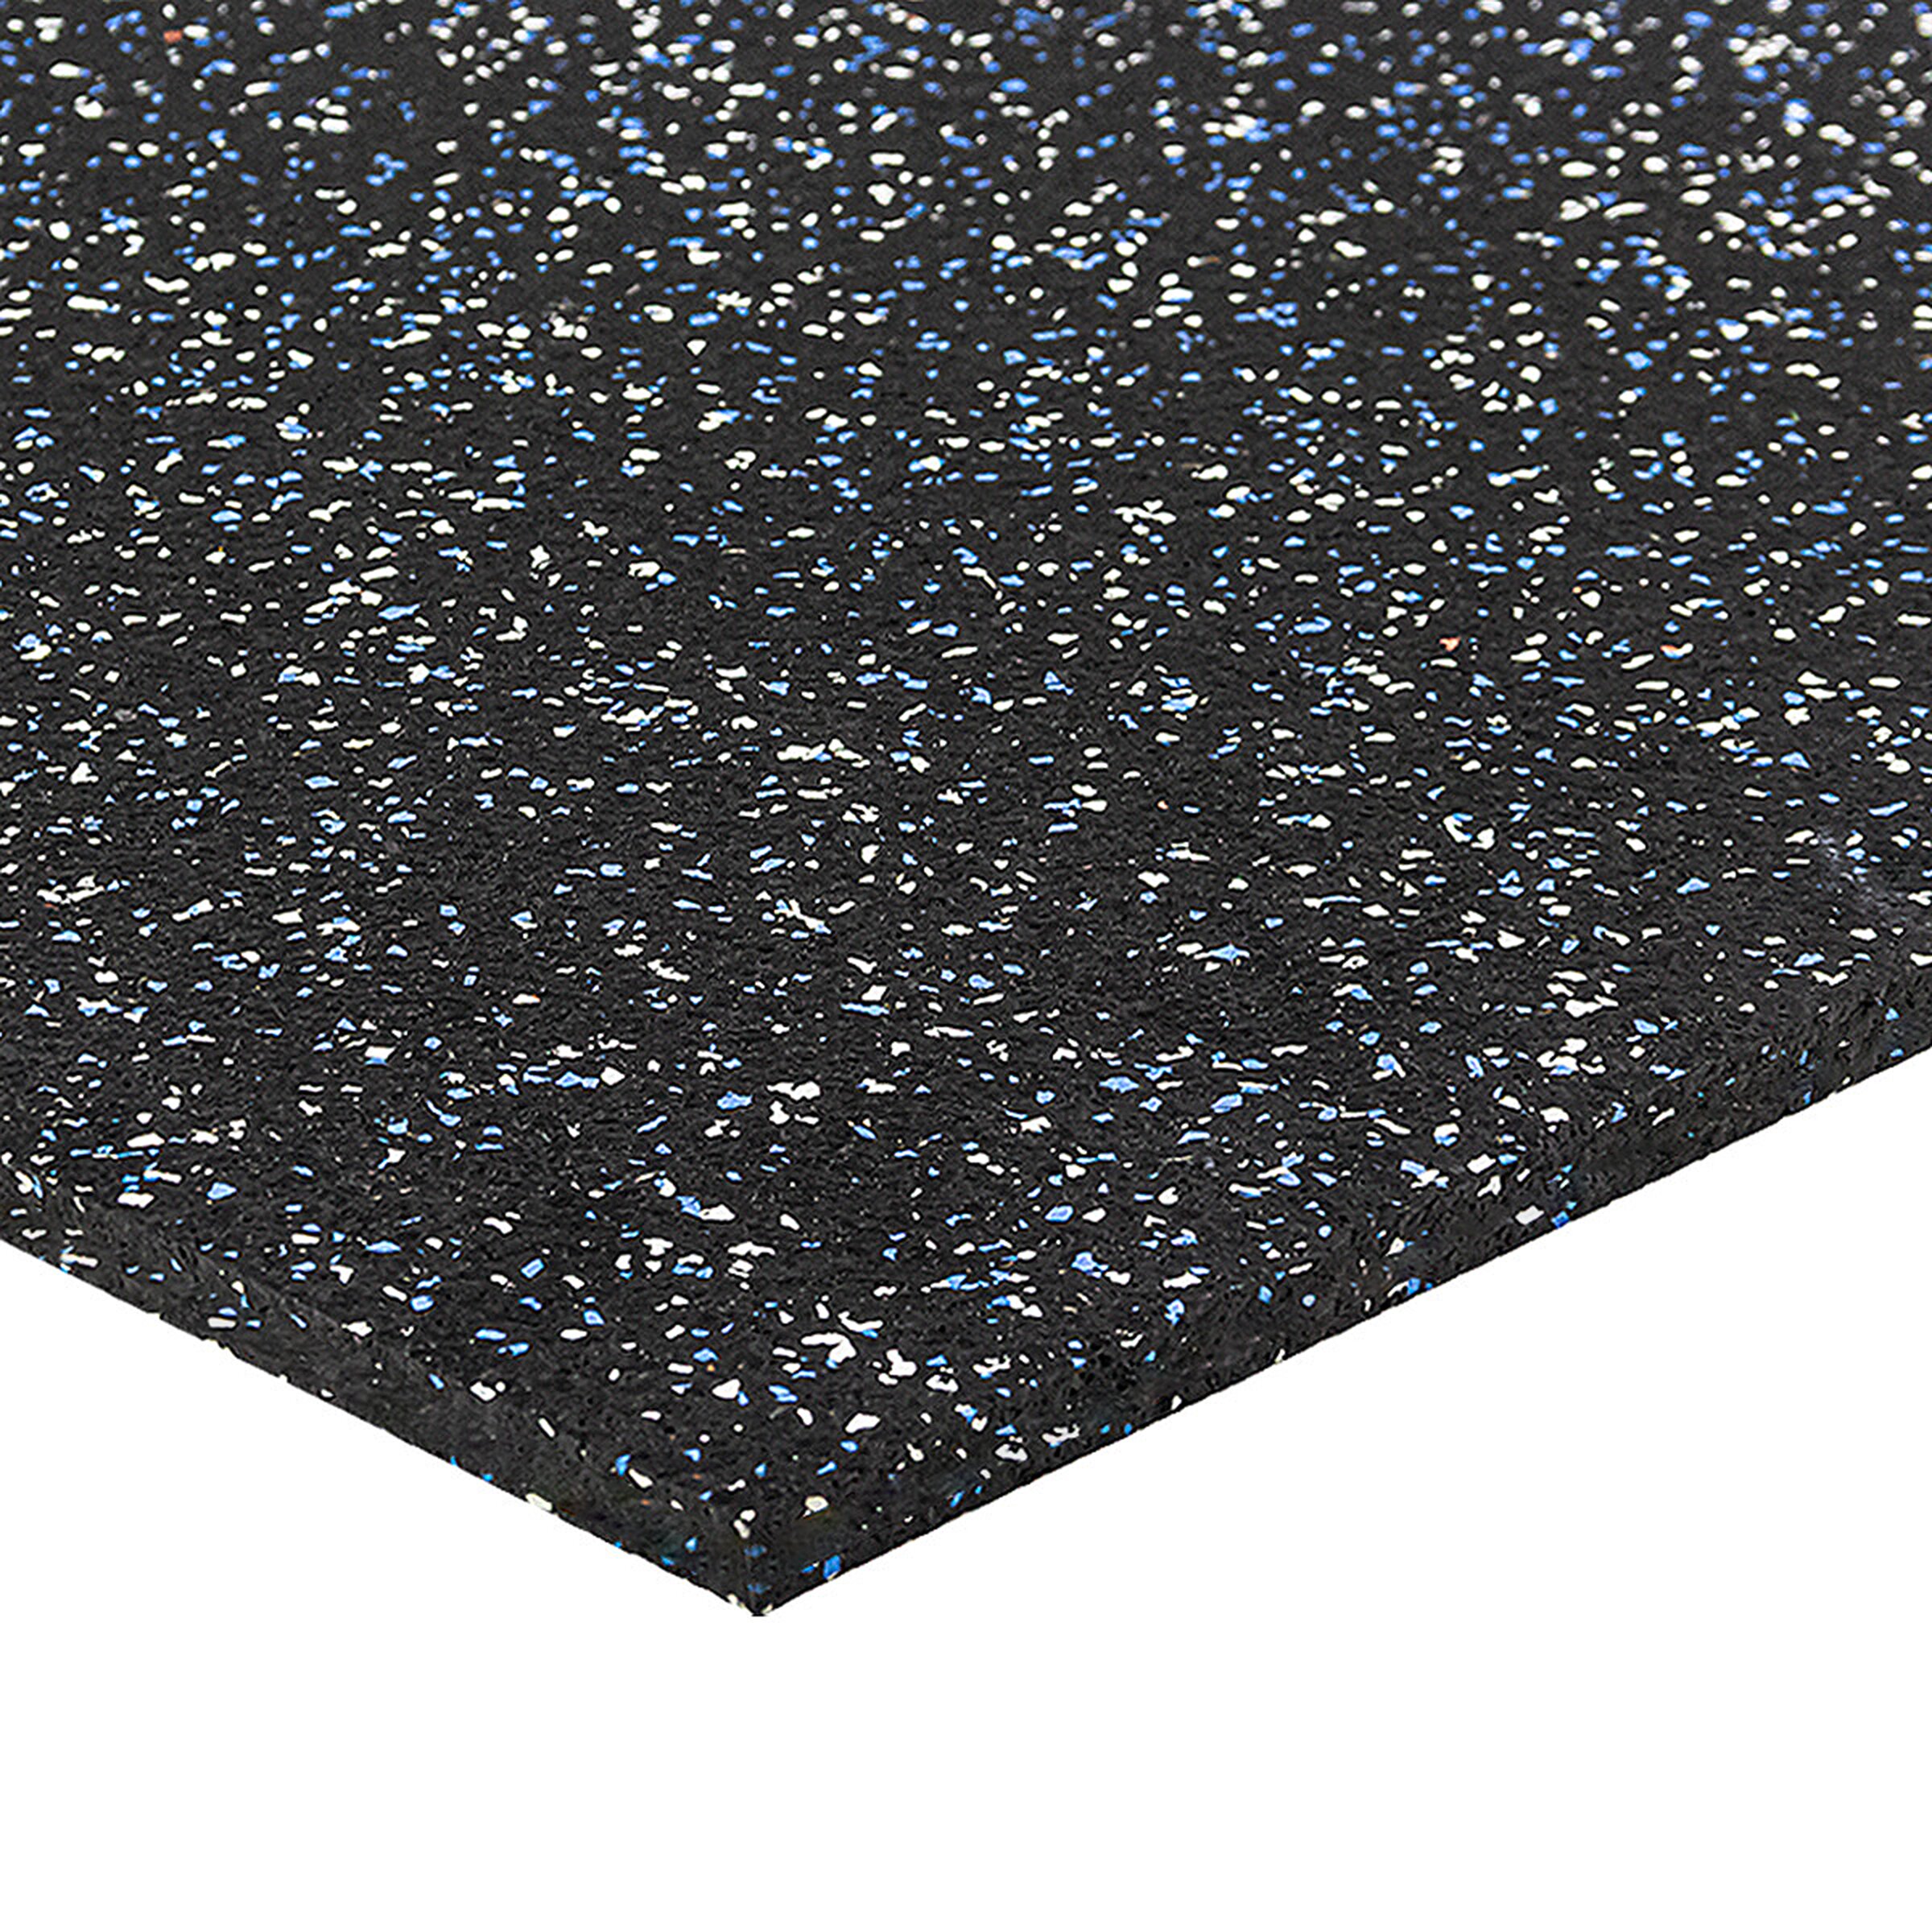 Černo-bílo-modrá podlahová guma FLOMA FitFlo SF1050 - délka 100 cm, šířka 100 cm, výška 1 cm